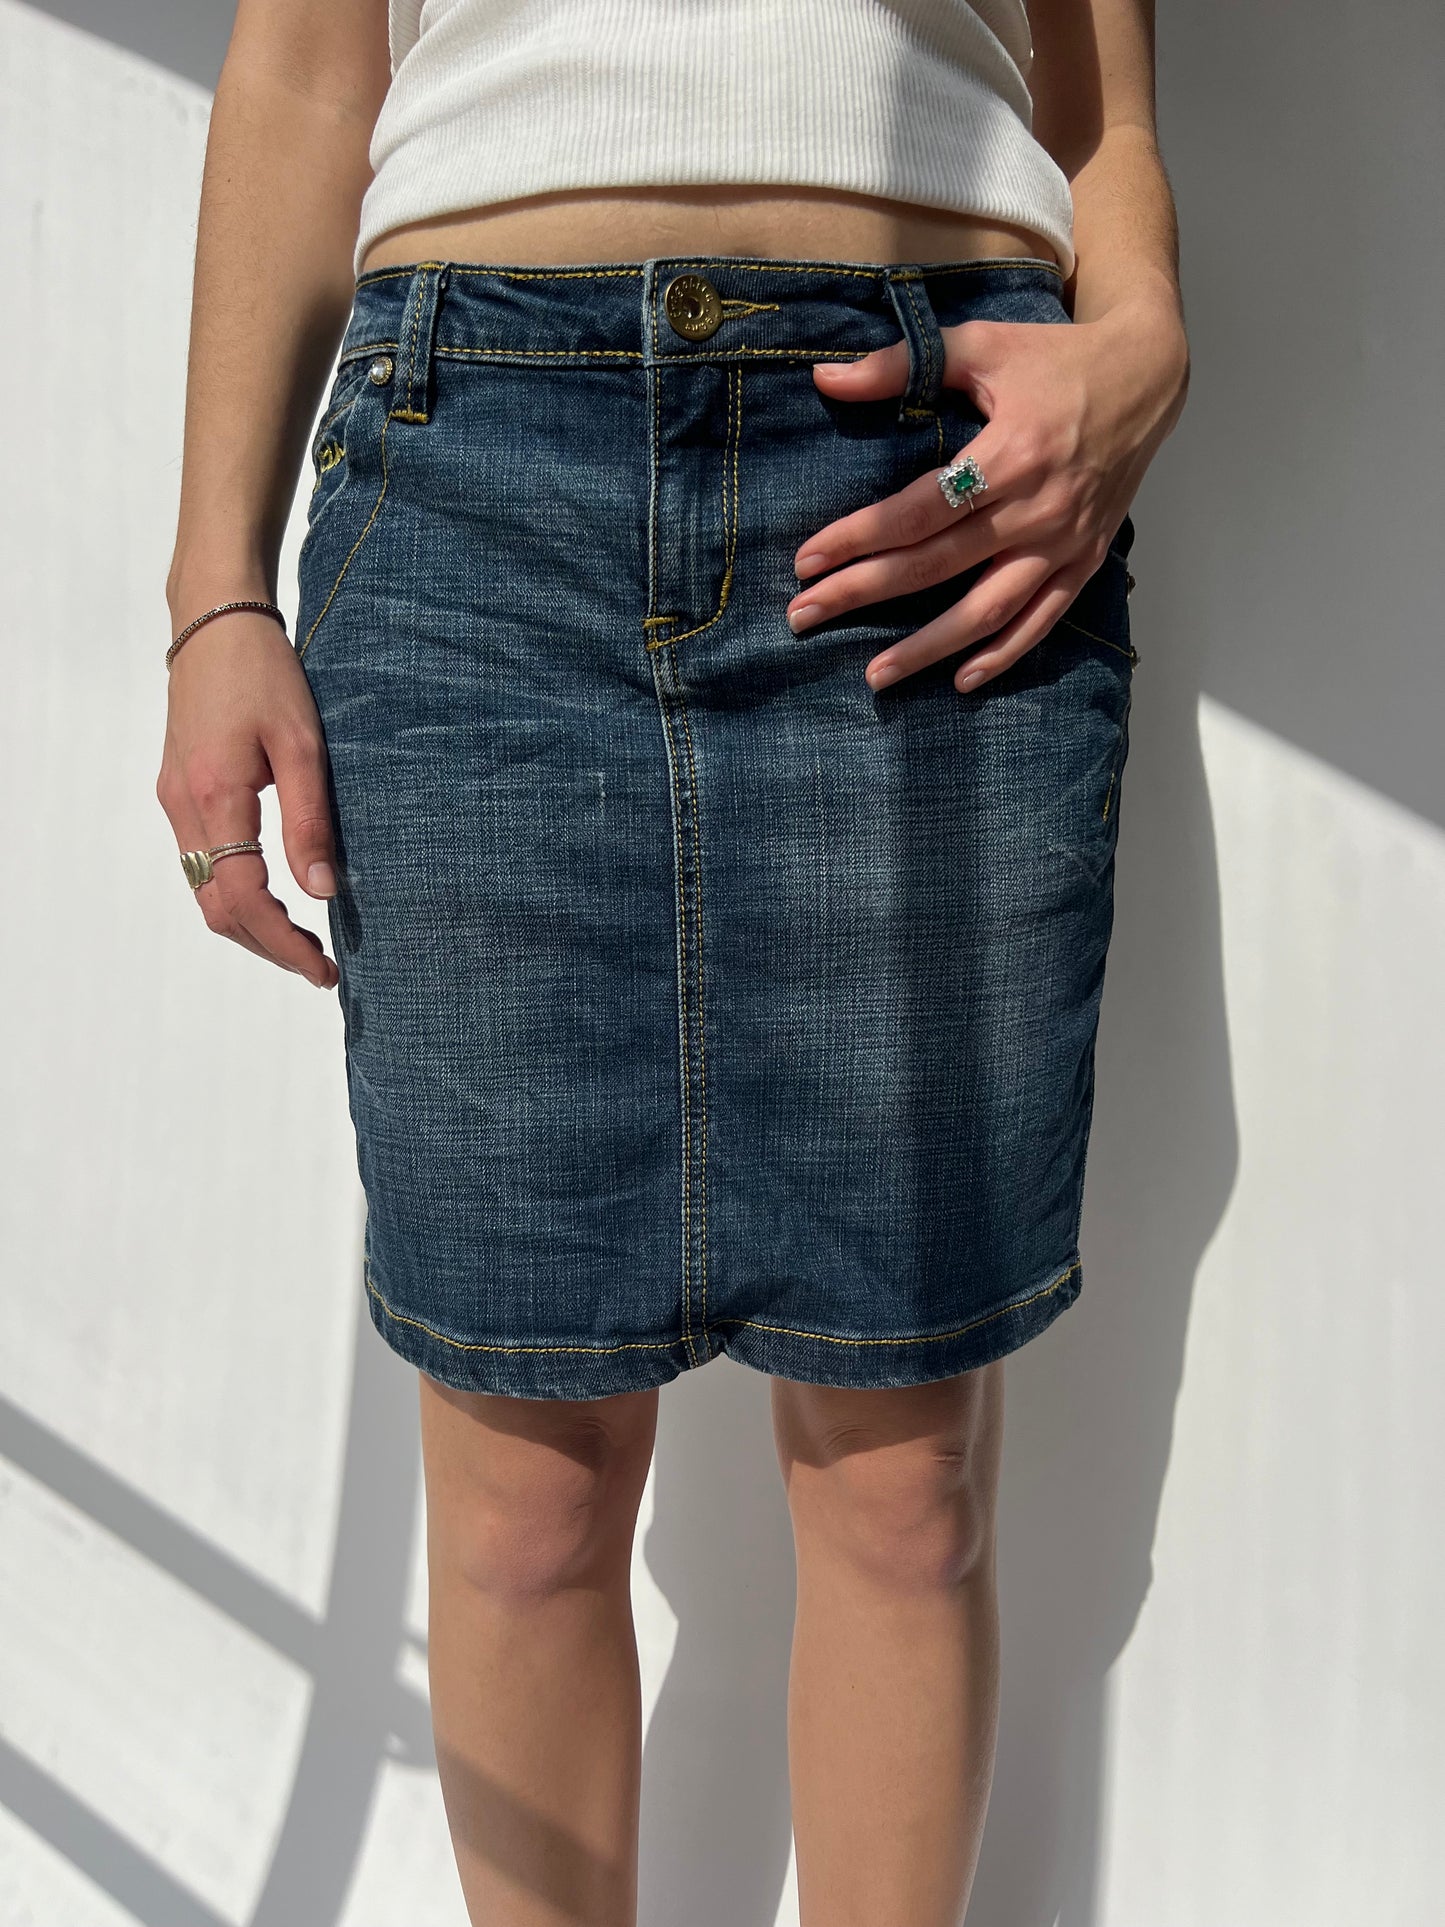 חצאית ג׳ינס משופשפת (36-38)